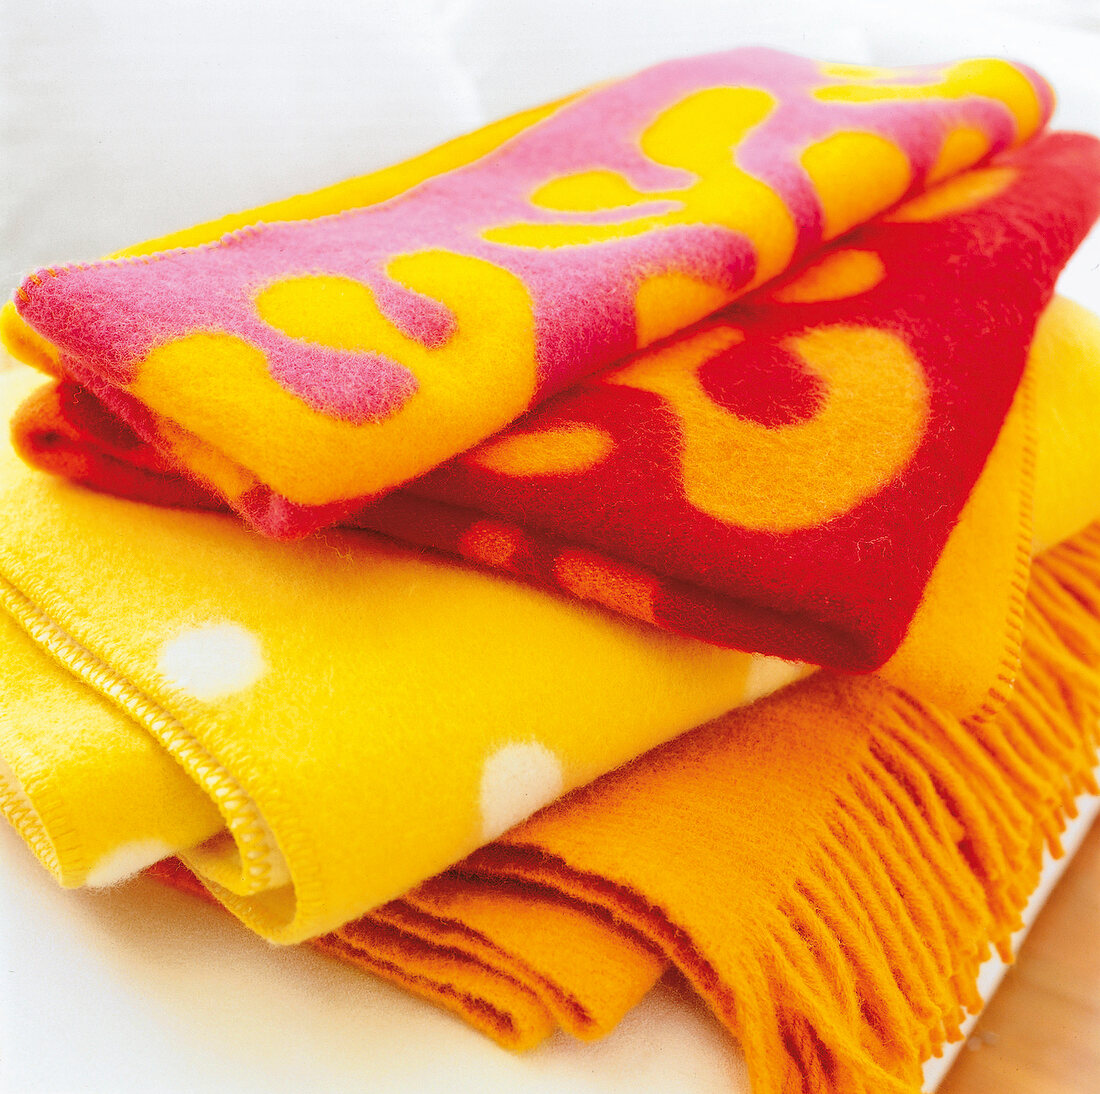 Gemusterte Decken in fröhlichen Farben, bunt, close-up